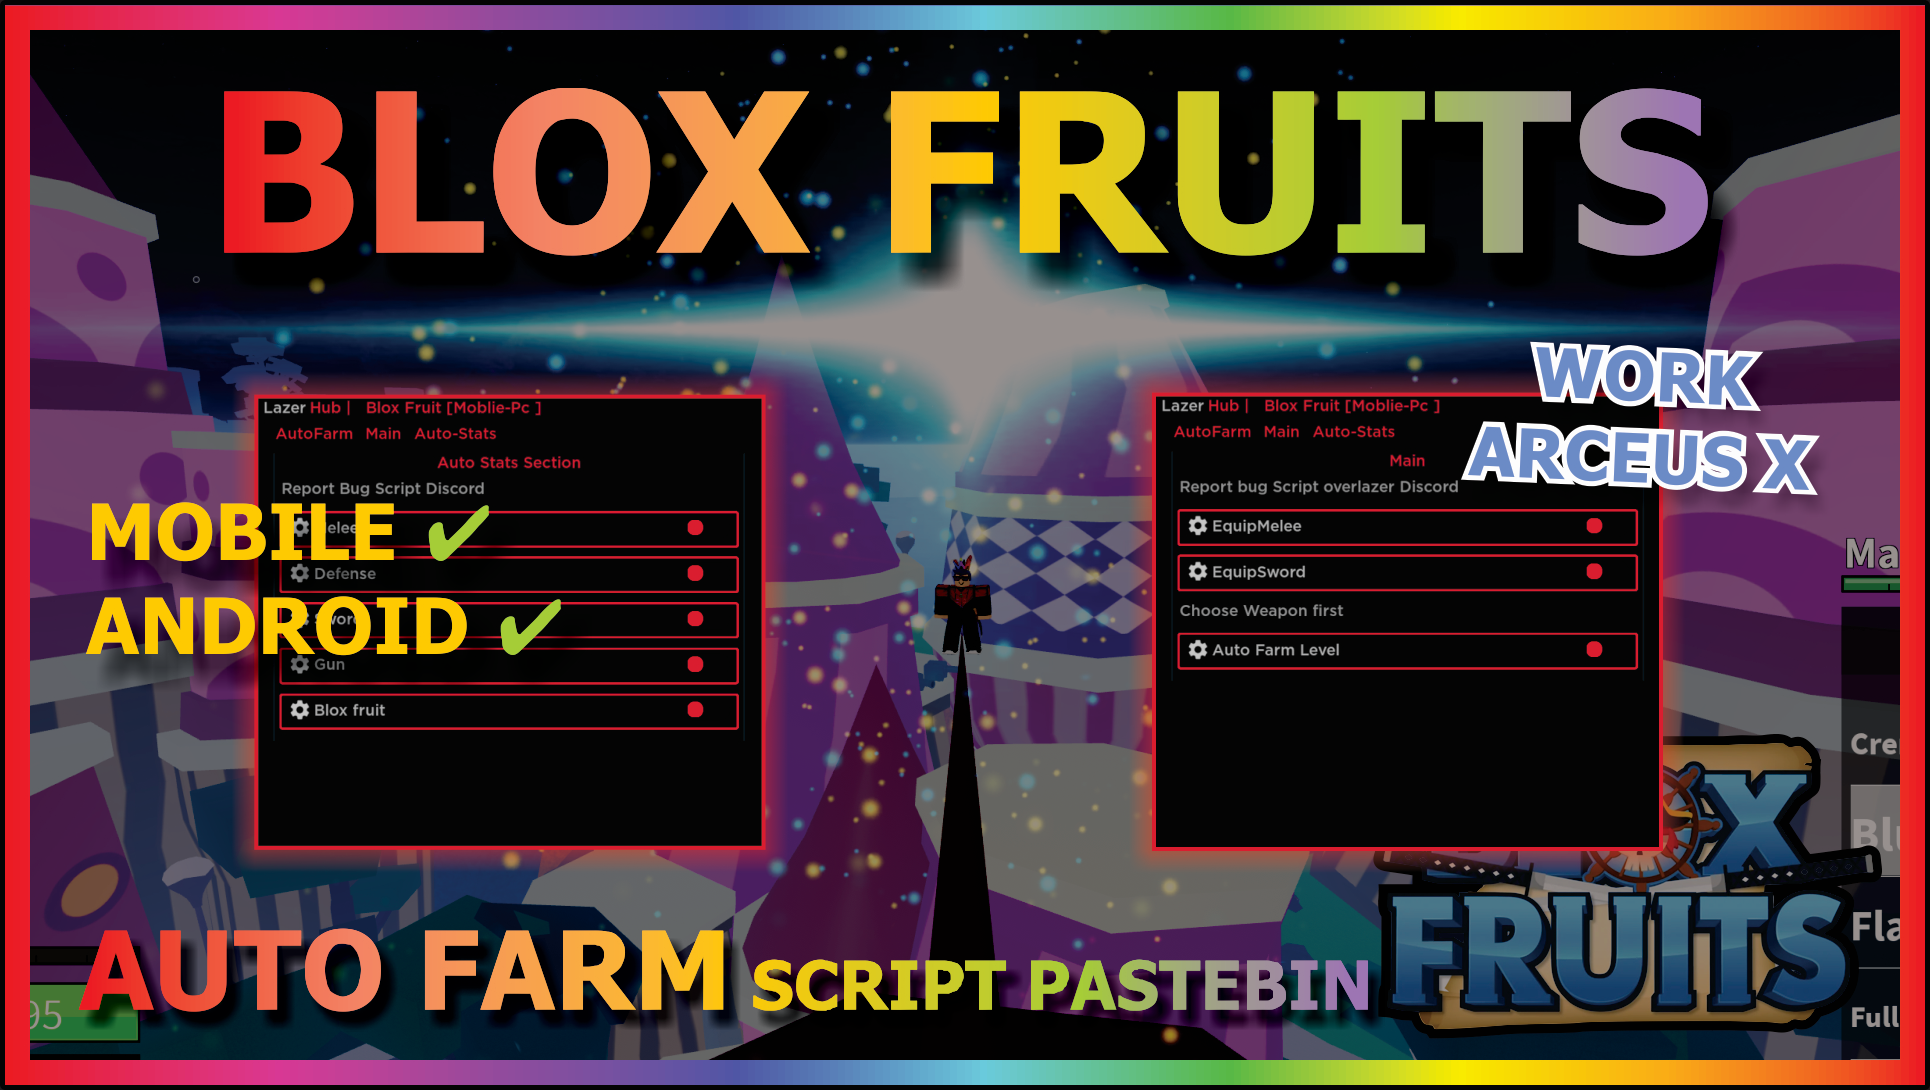 Blox fruits autofarm script pastebin